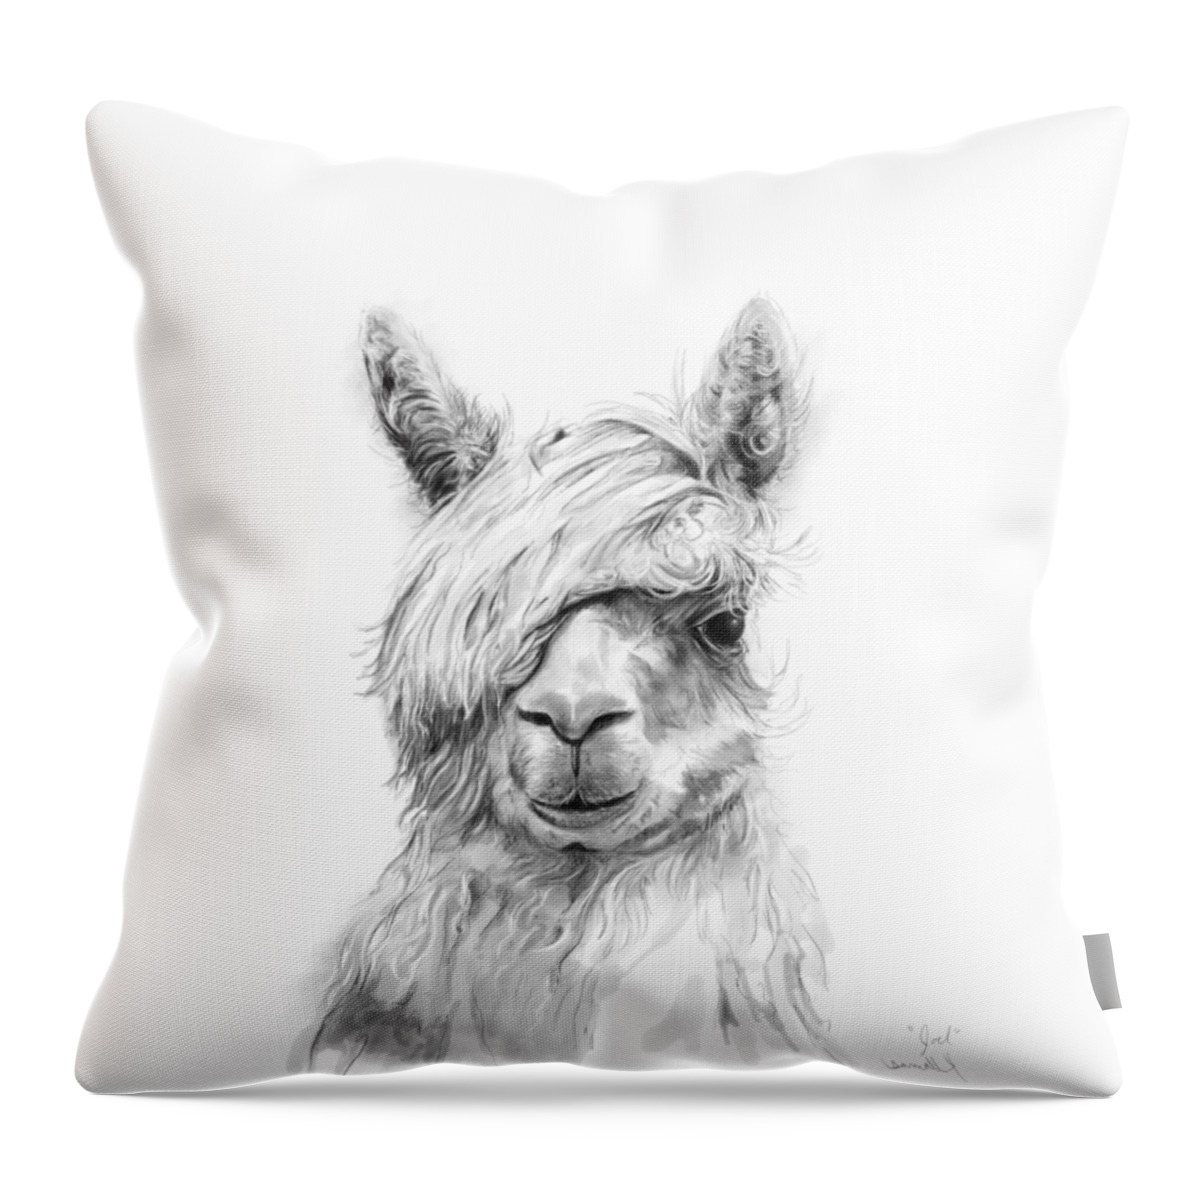 Llama Art Throw Pillow featuring the drawing Joel by Kristin Llamas